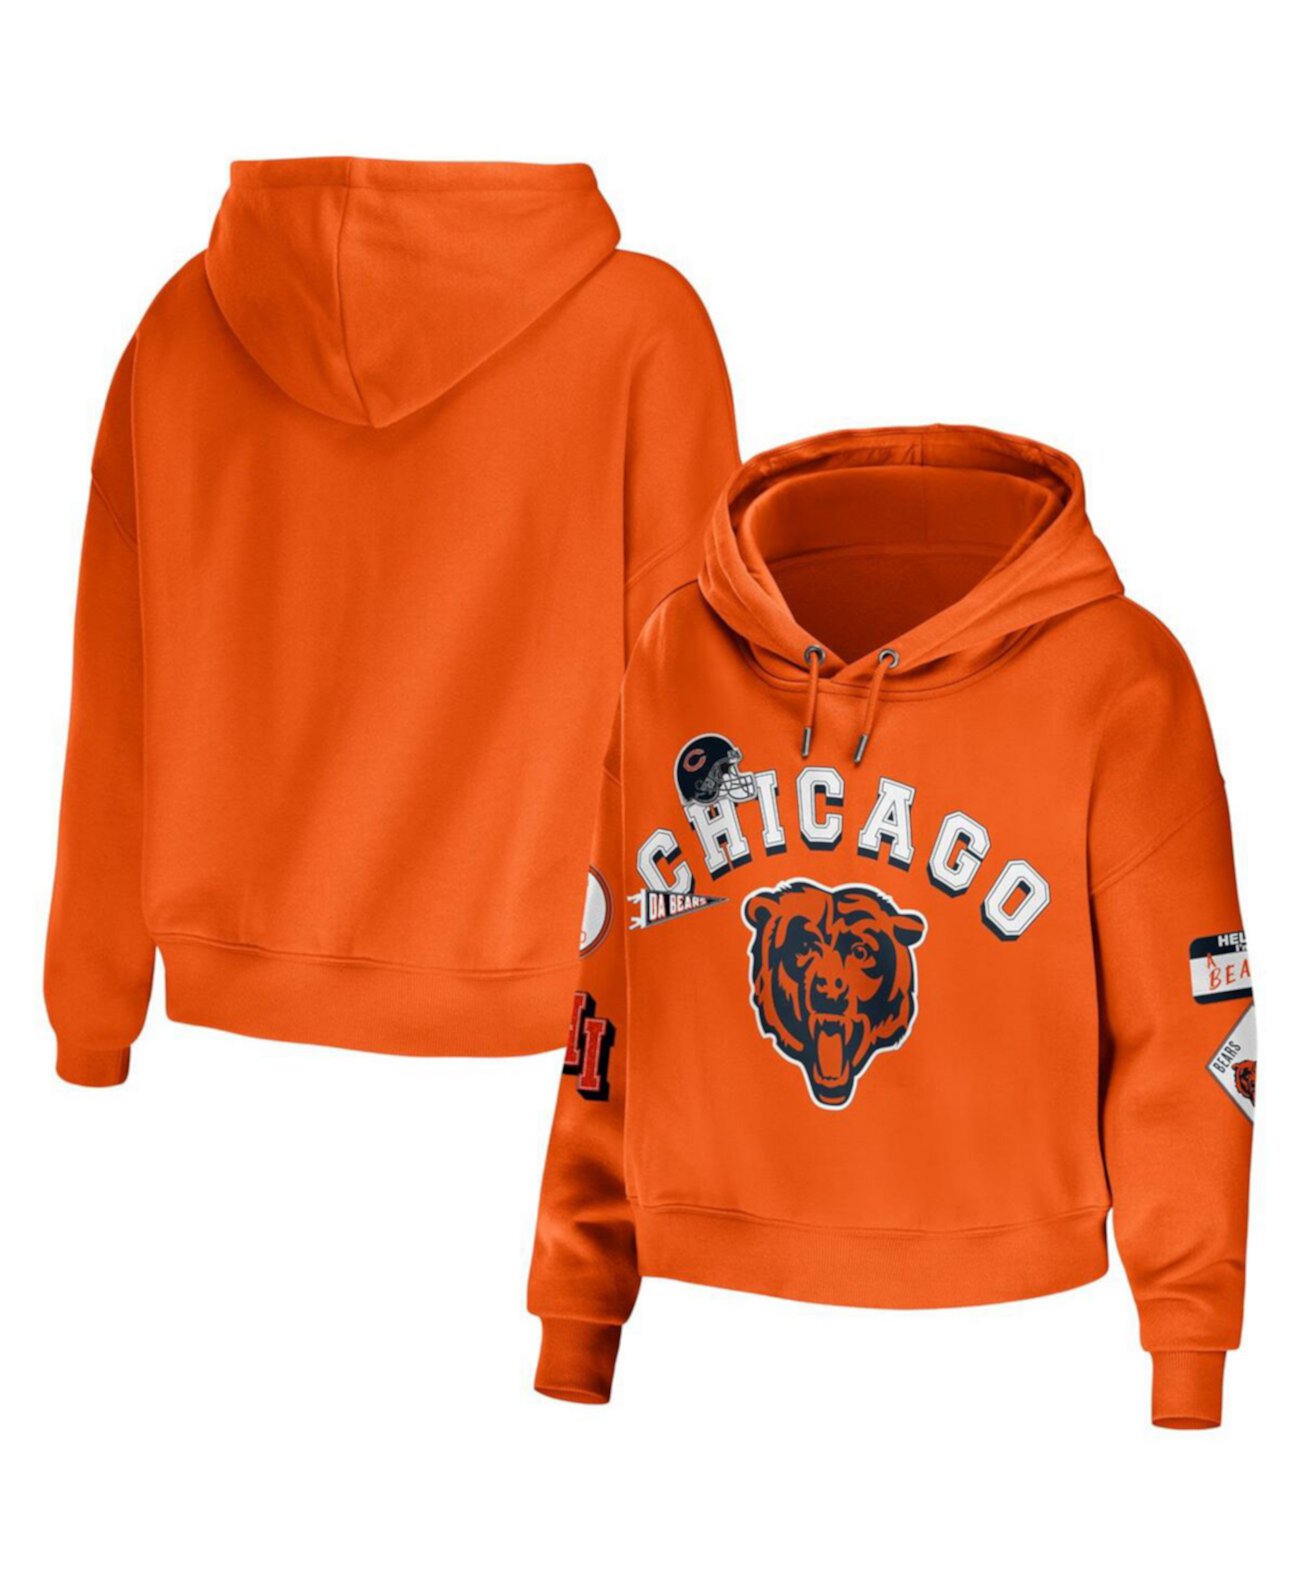 Женский оранжевый укороченный пуловер больших размеров с капюшоном Chicago Bears большого размера WEAR by Erin Andrews